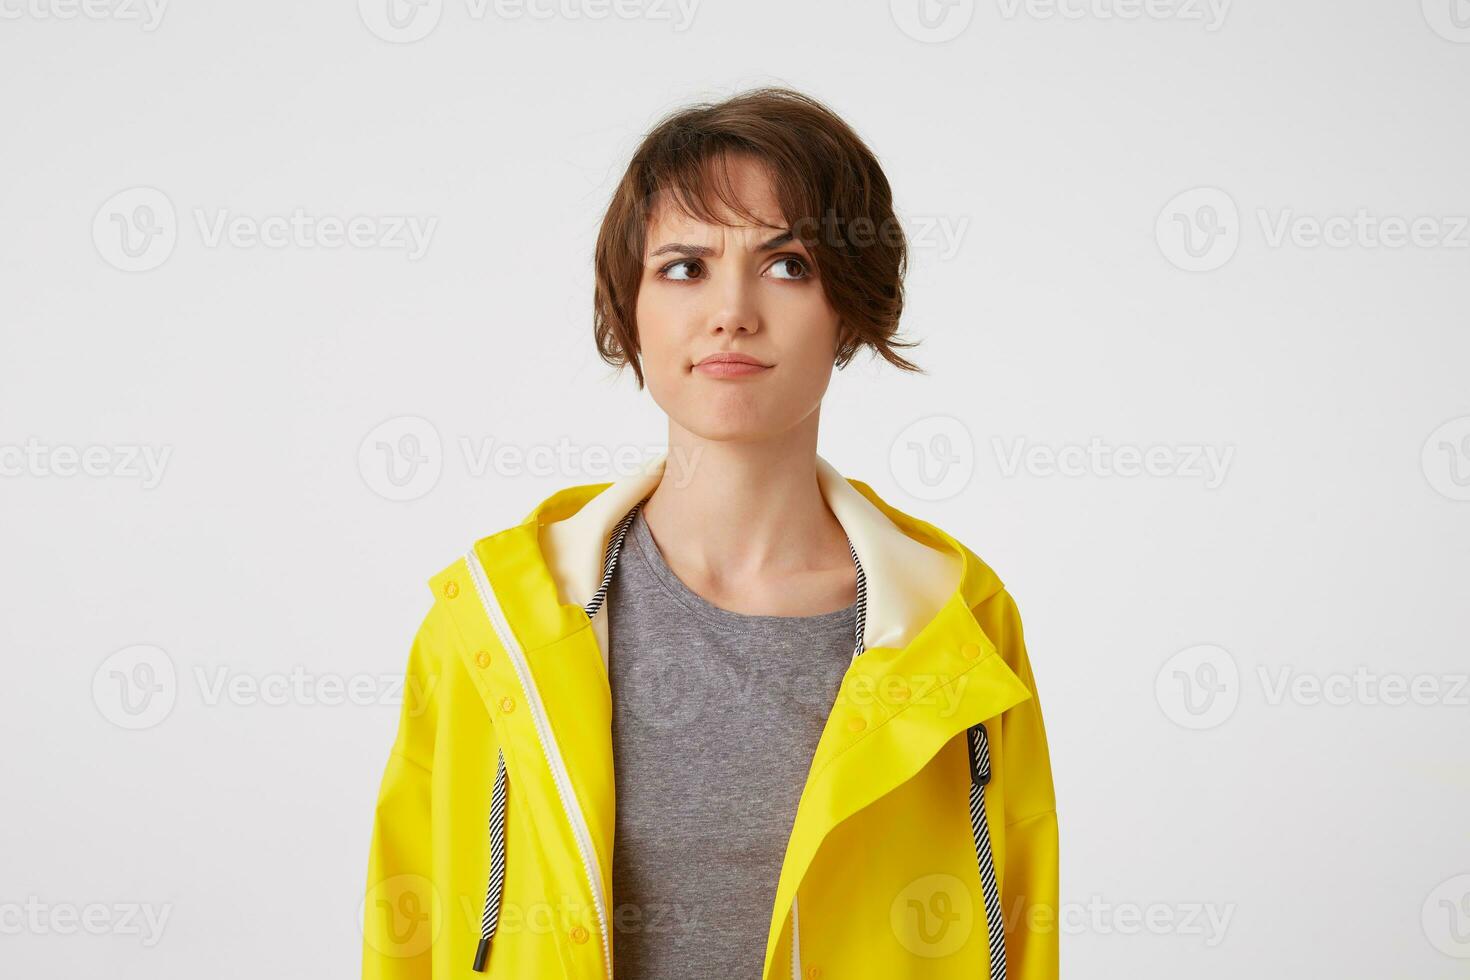 jovem duvidando cabelo curto mulher dentro chuva amarela casaco, franzindo a testa parece ausente, carrinhos sobre branco fundo, parece descontentamento e duvidando. foto